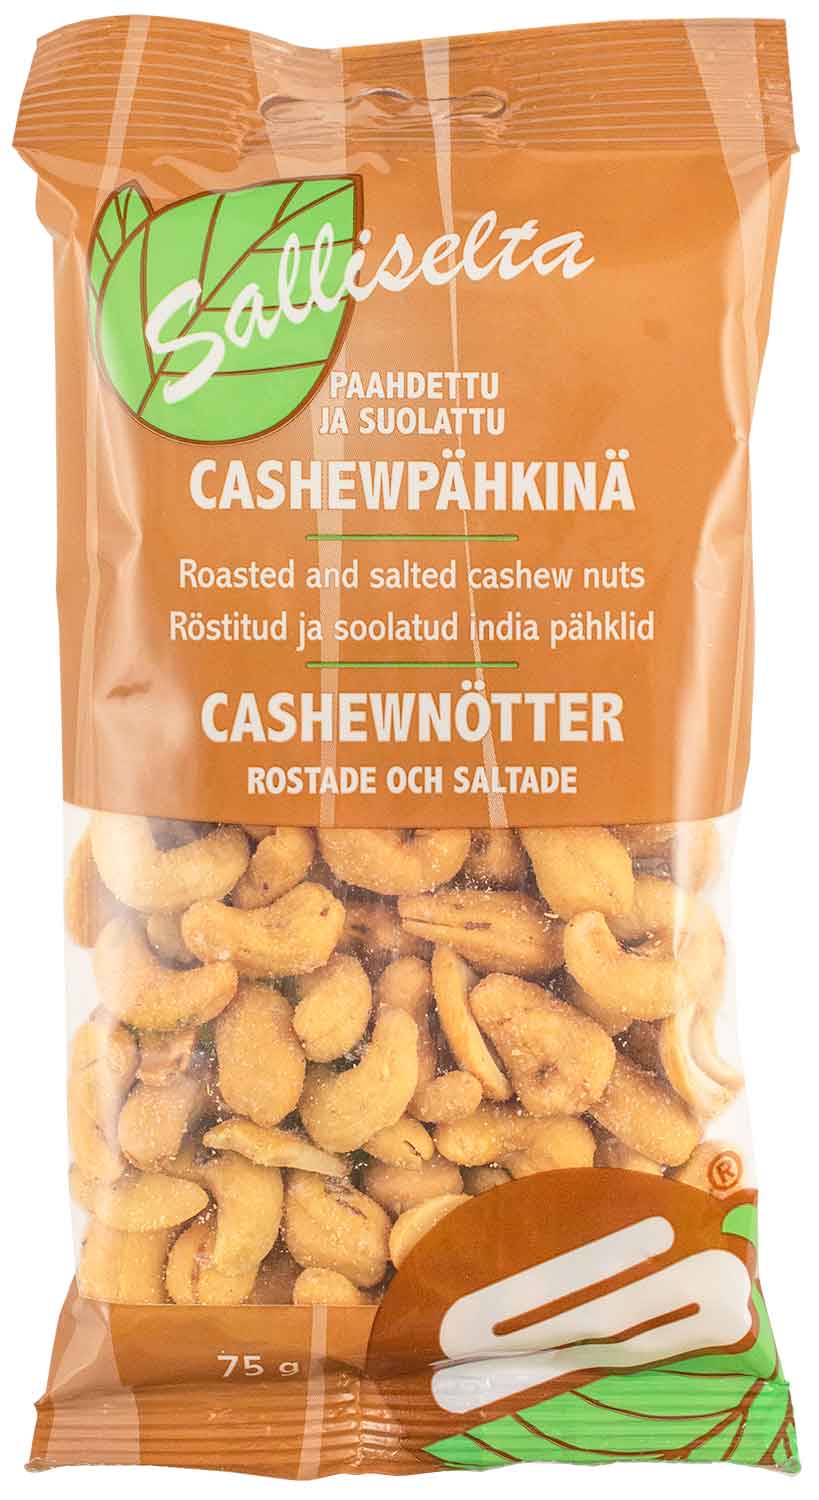 Cashewnötter rostade och saltade 75g